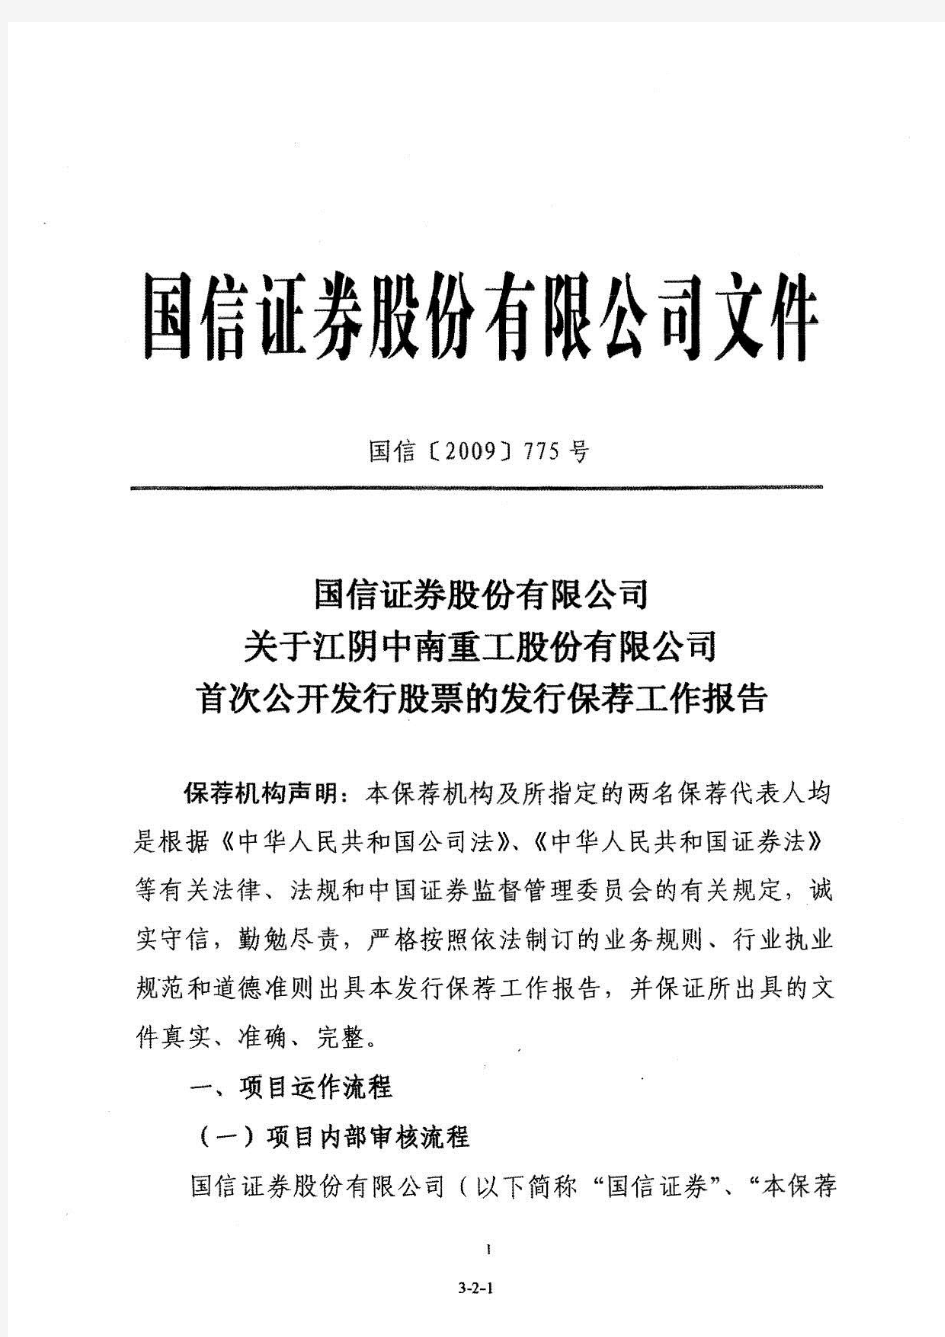 中南重工：国信证券股份有限公司关于公司首次公开发行股票的发行保荐工作报告 2010-06-22